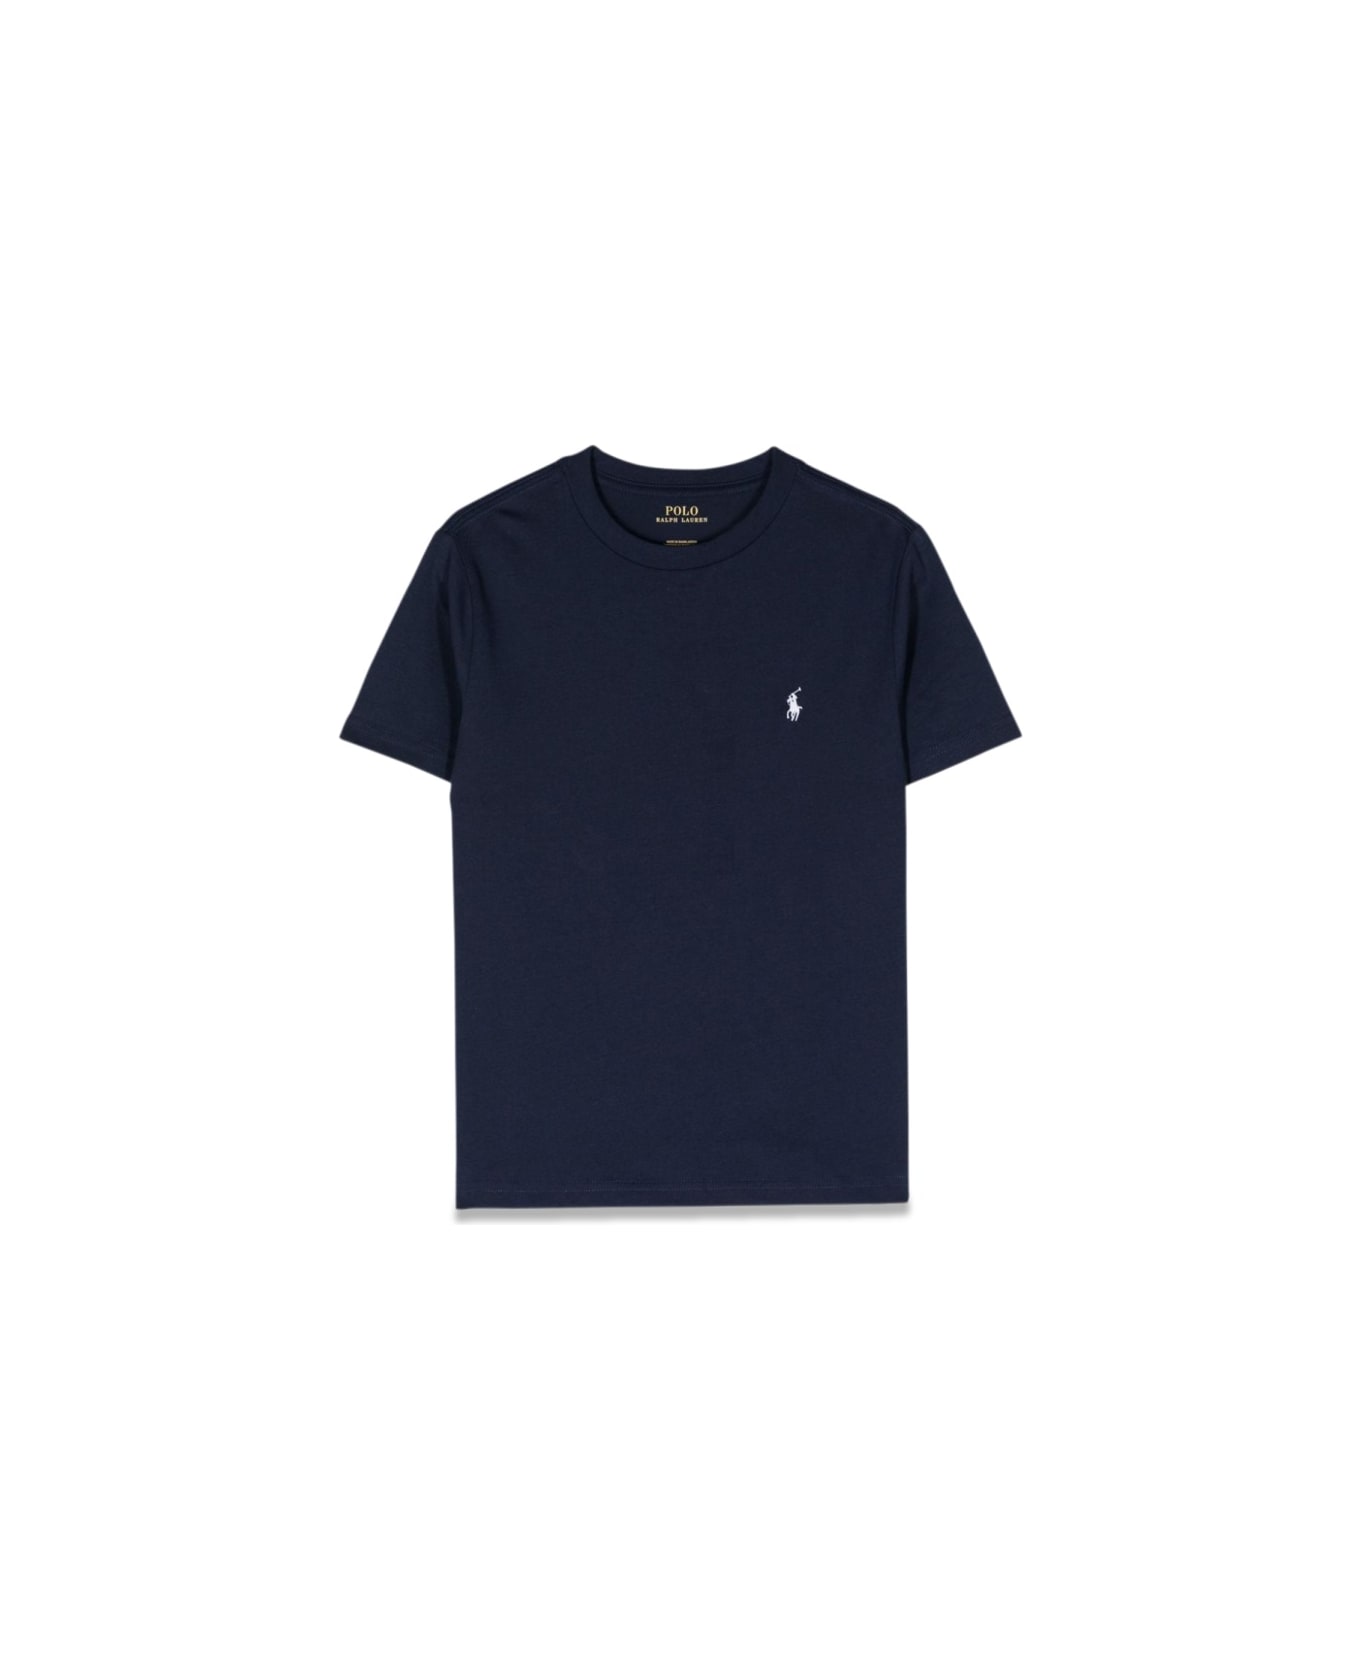 Polo Ralph Lauren Shirts-t-shirt - BLUE